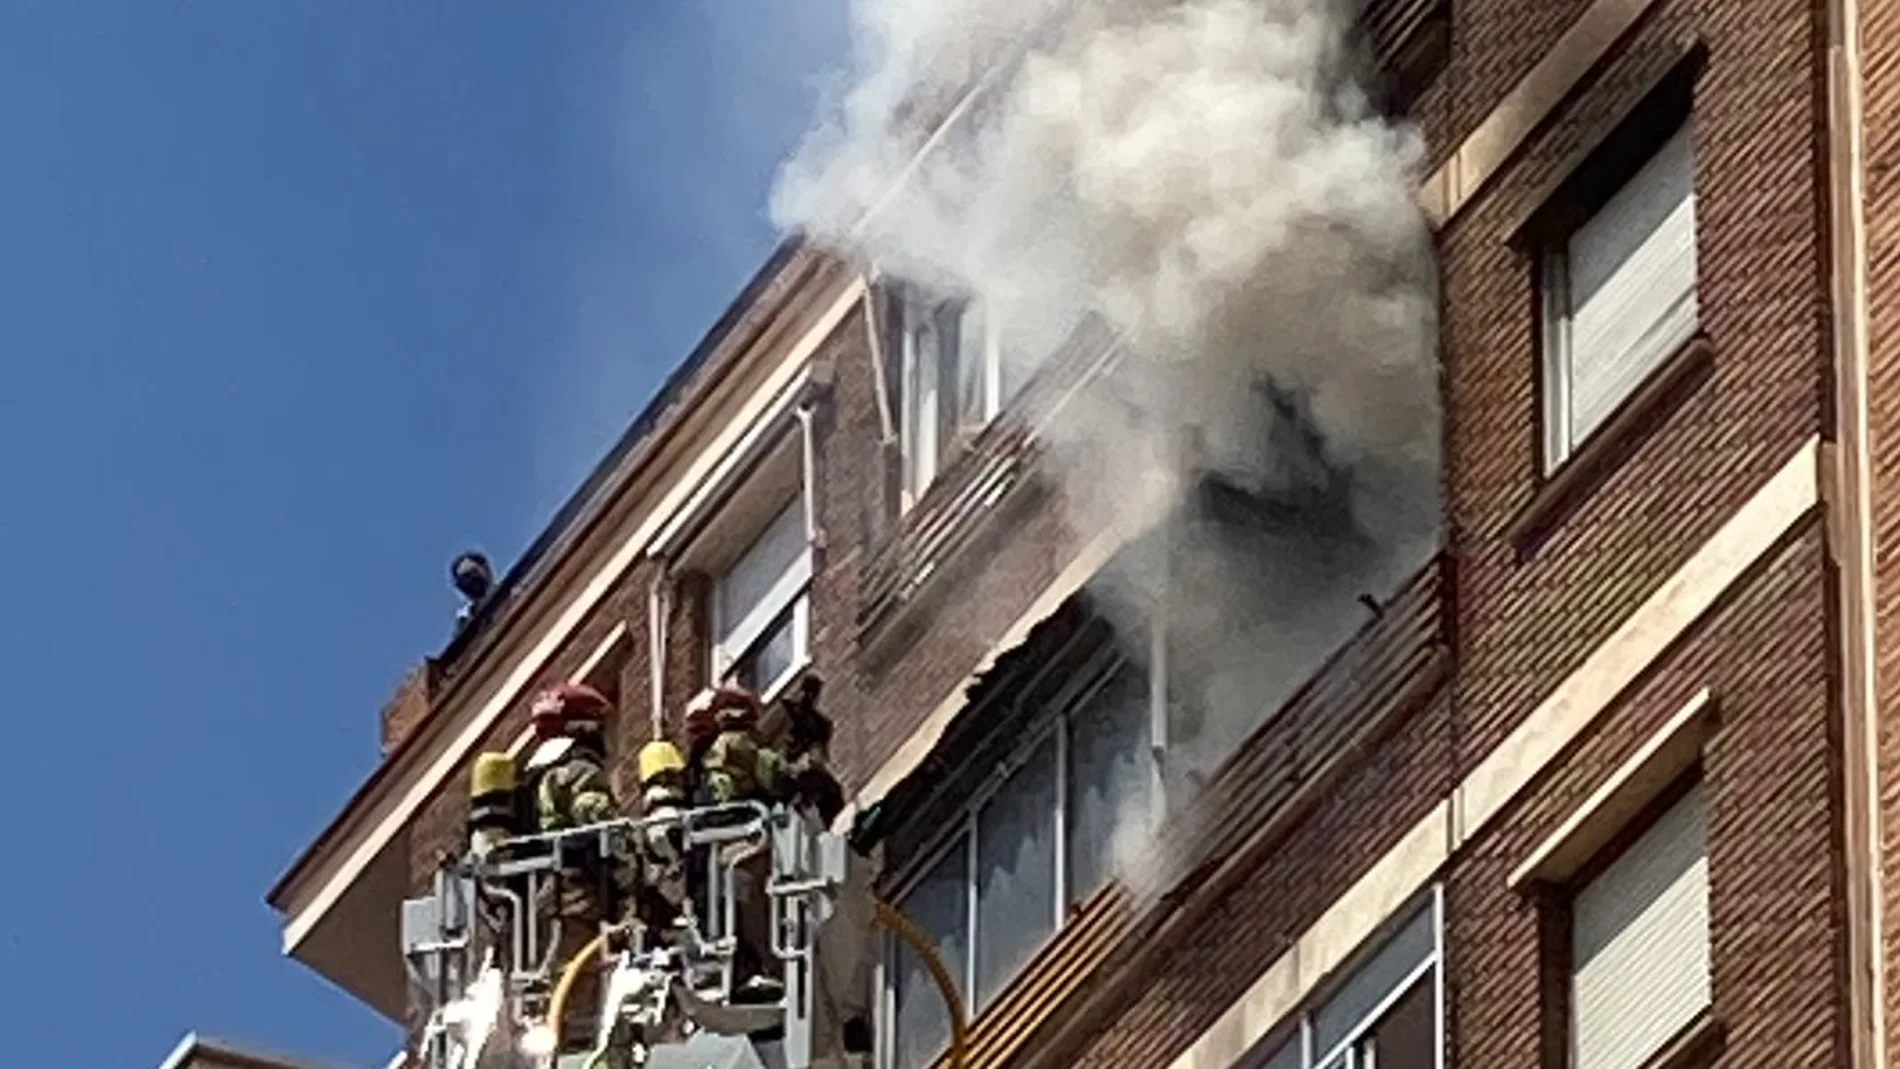 Los bomberos intervienen en el incendio de una vivienda en la calle Padilla de Valladolid